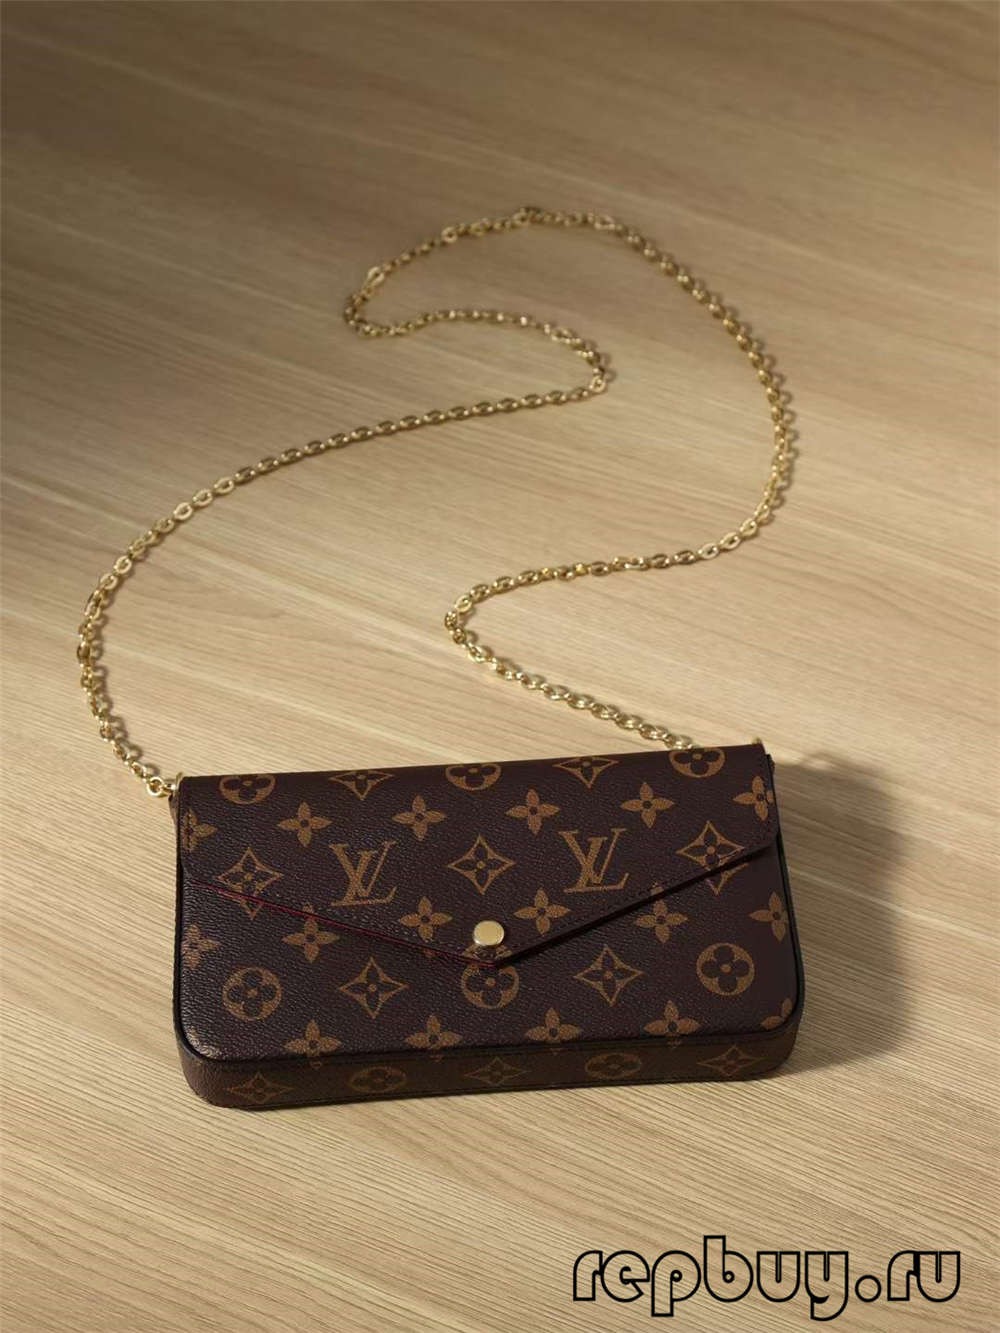 Louis Vuitton POCHETTE FÉLICIE top quality replica bags（2022 Latest）-Dyqani në internet i çantave të rreme Louis Vuitton me cilësi më të mirë, çanta modeli kopje ru